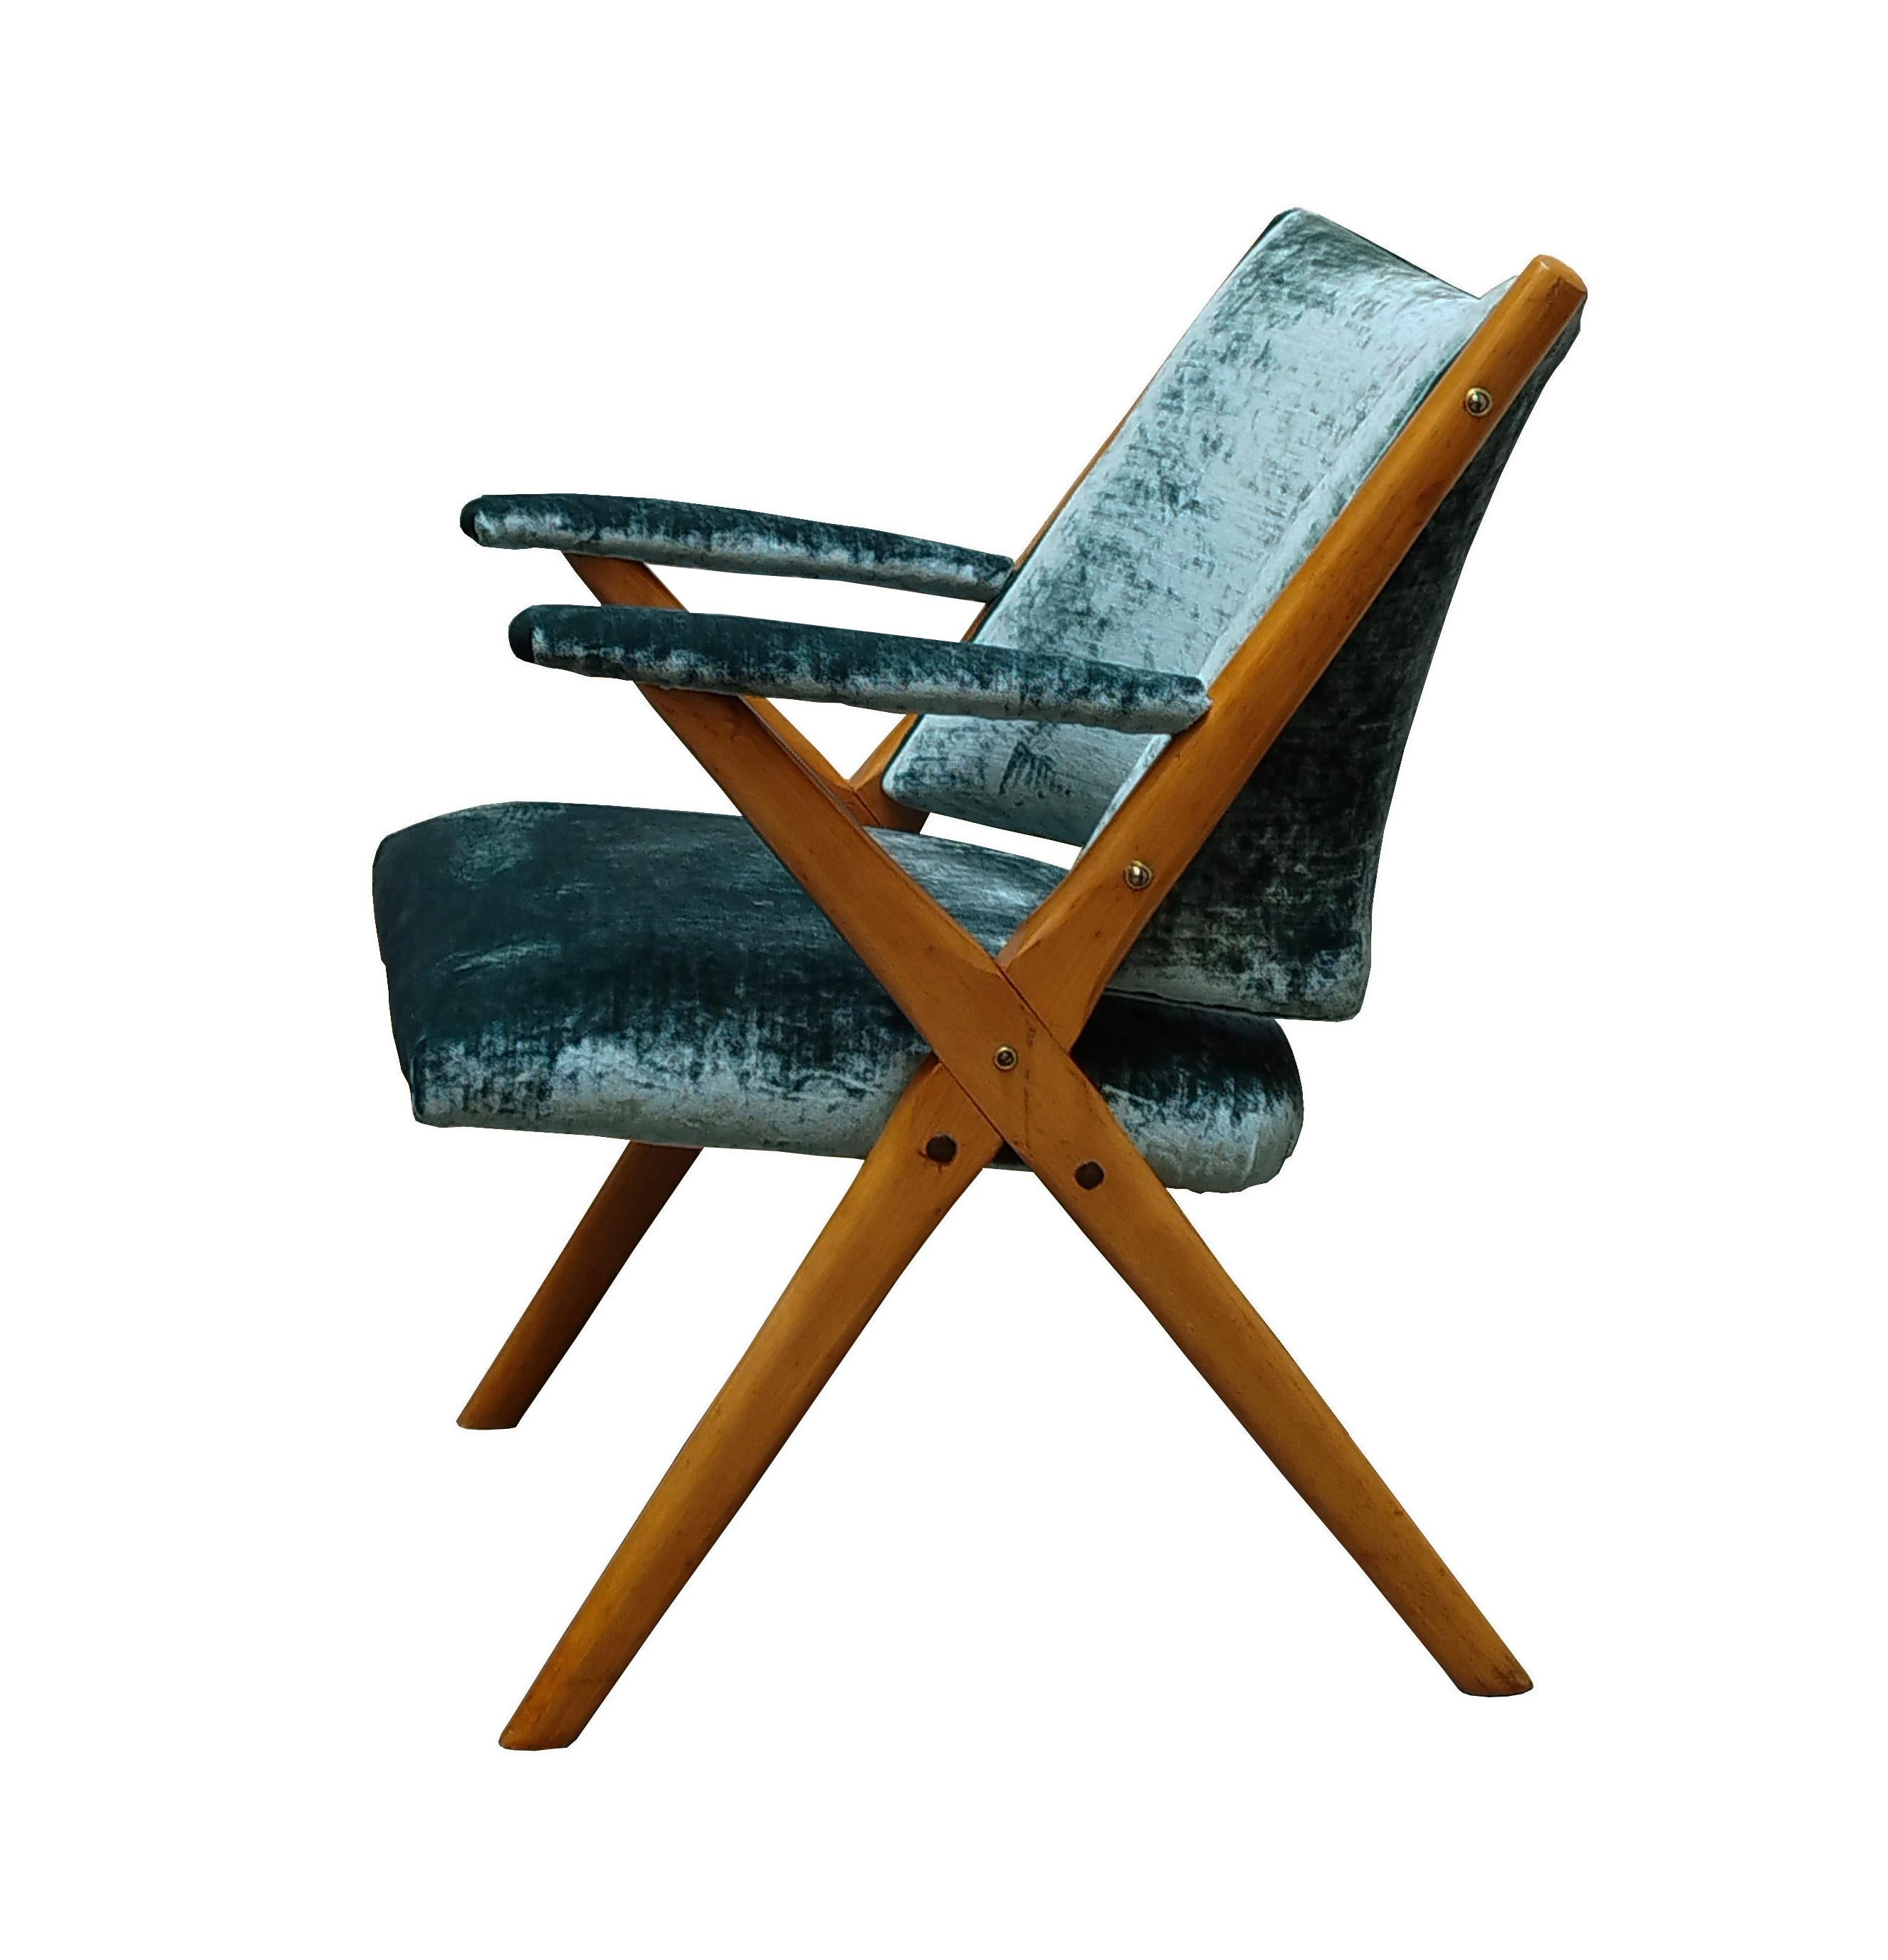 Sessel, hergestellt in den 1960er Jahren in Italien von Dal Vera.
Geformter Massivholzrahmen.
Sitz und Rückenlehne aus Metall gepolstert und mit neuem grünen Stoff bezogen.
Insgesamt guter Zustand.